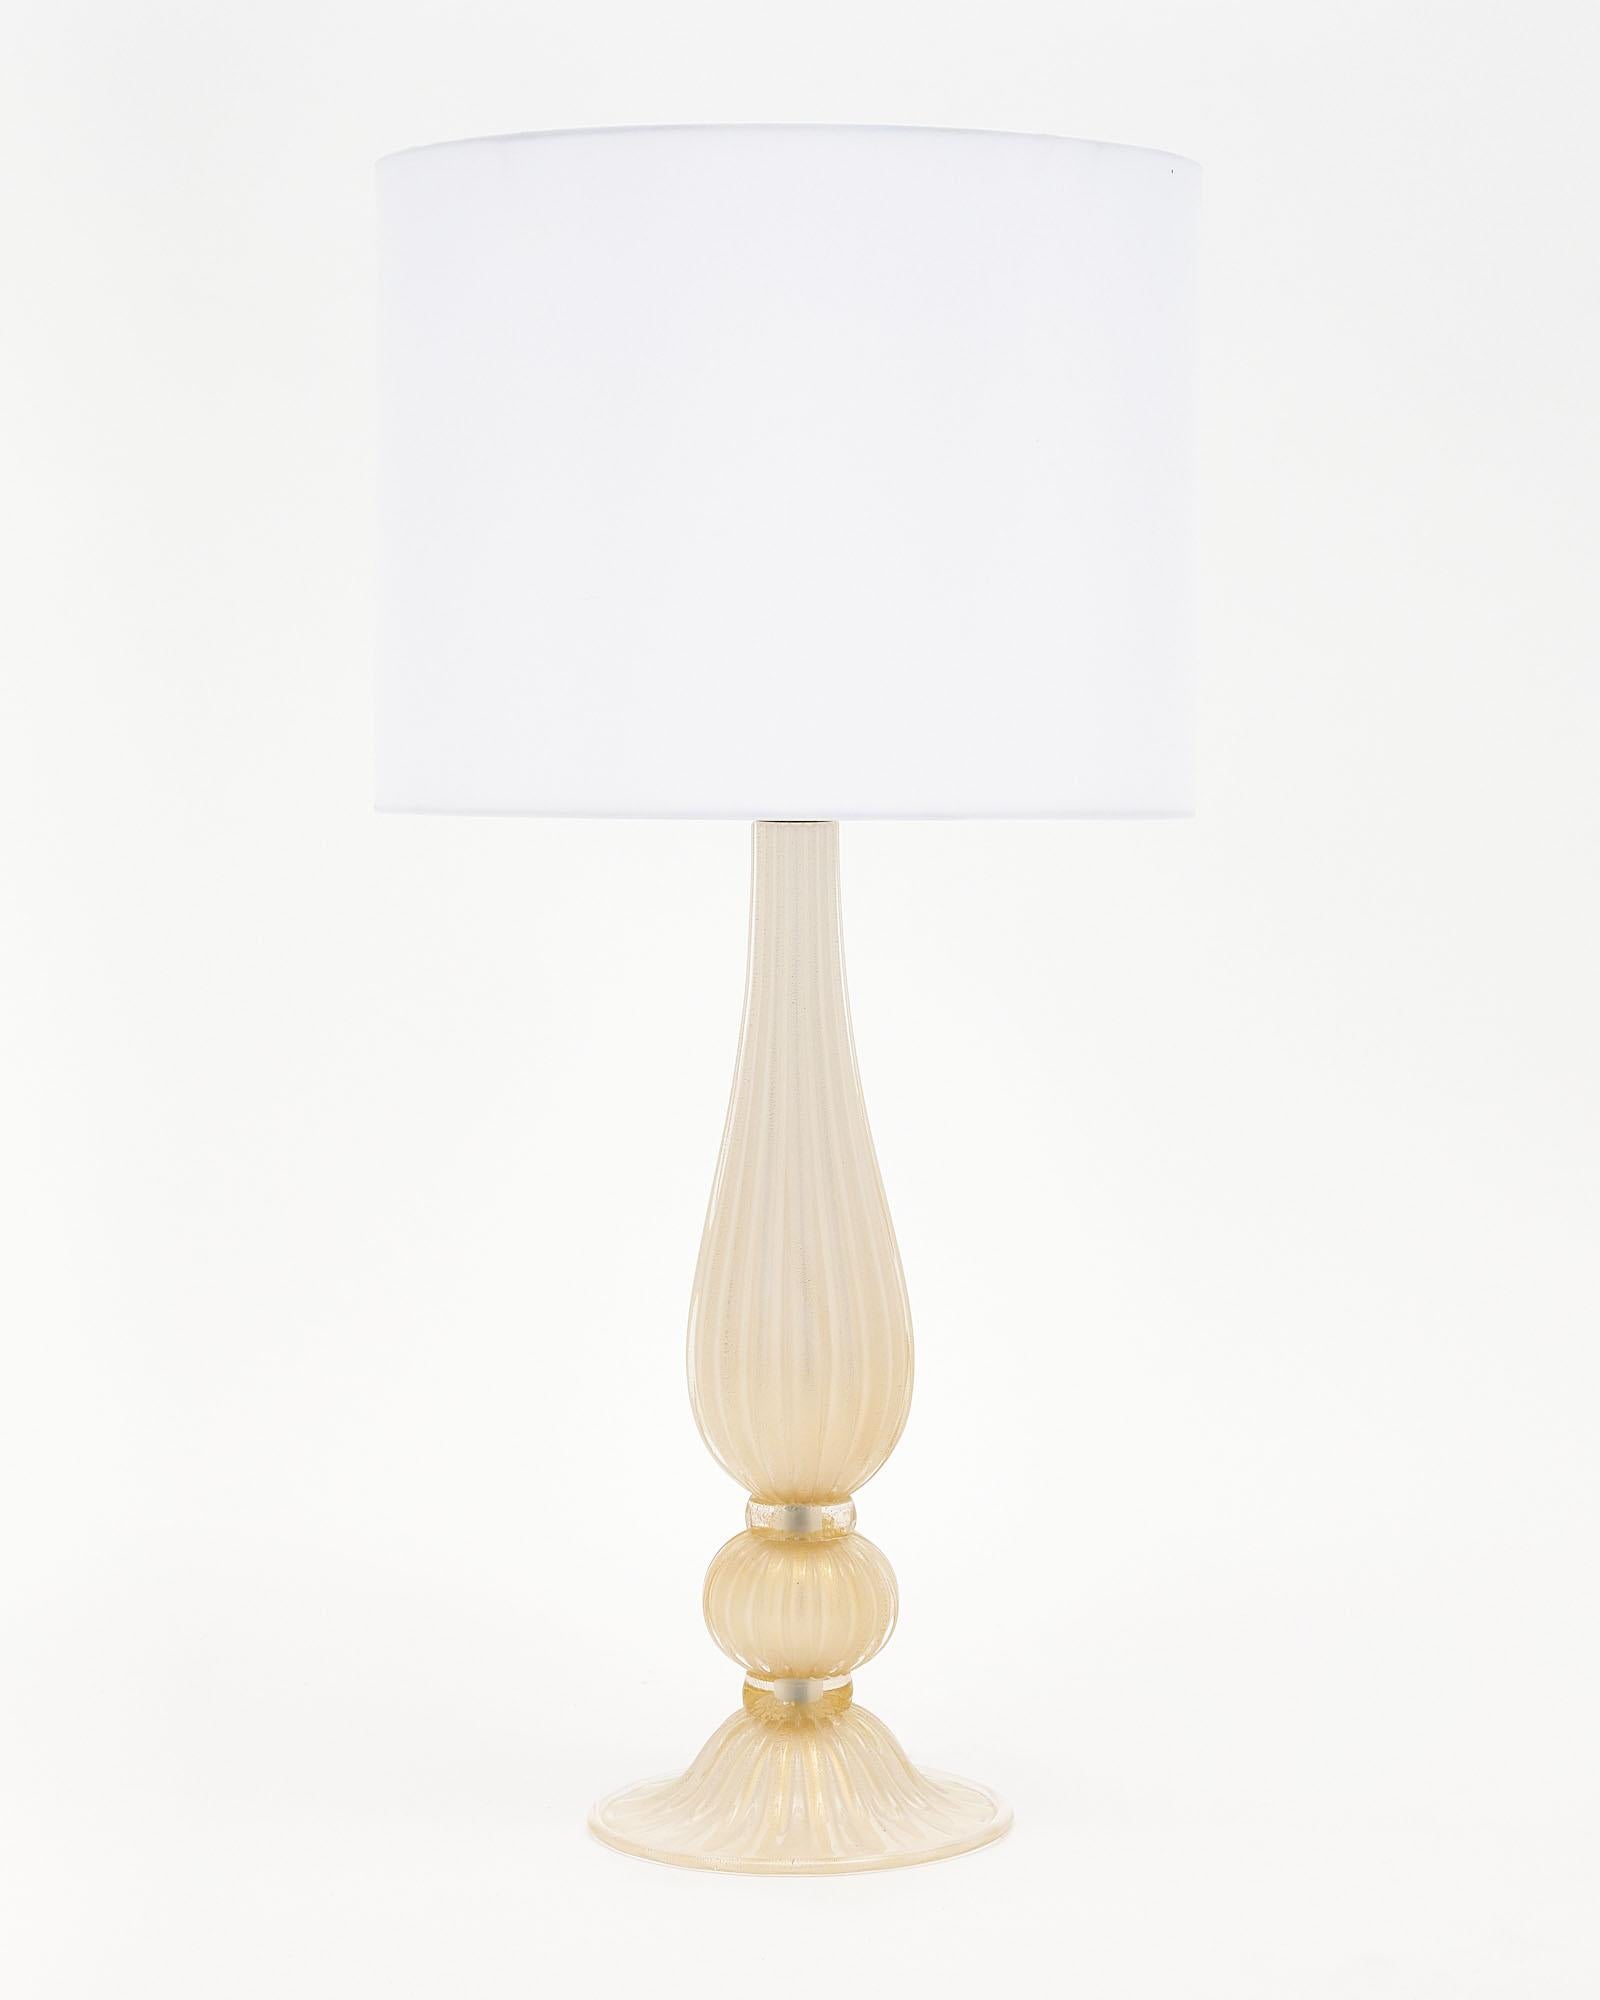 Murano “Incamiciato” Gold Glass Table Lamps For Sale 1